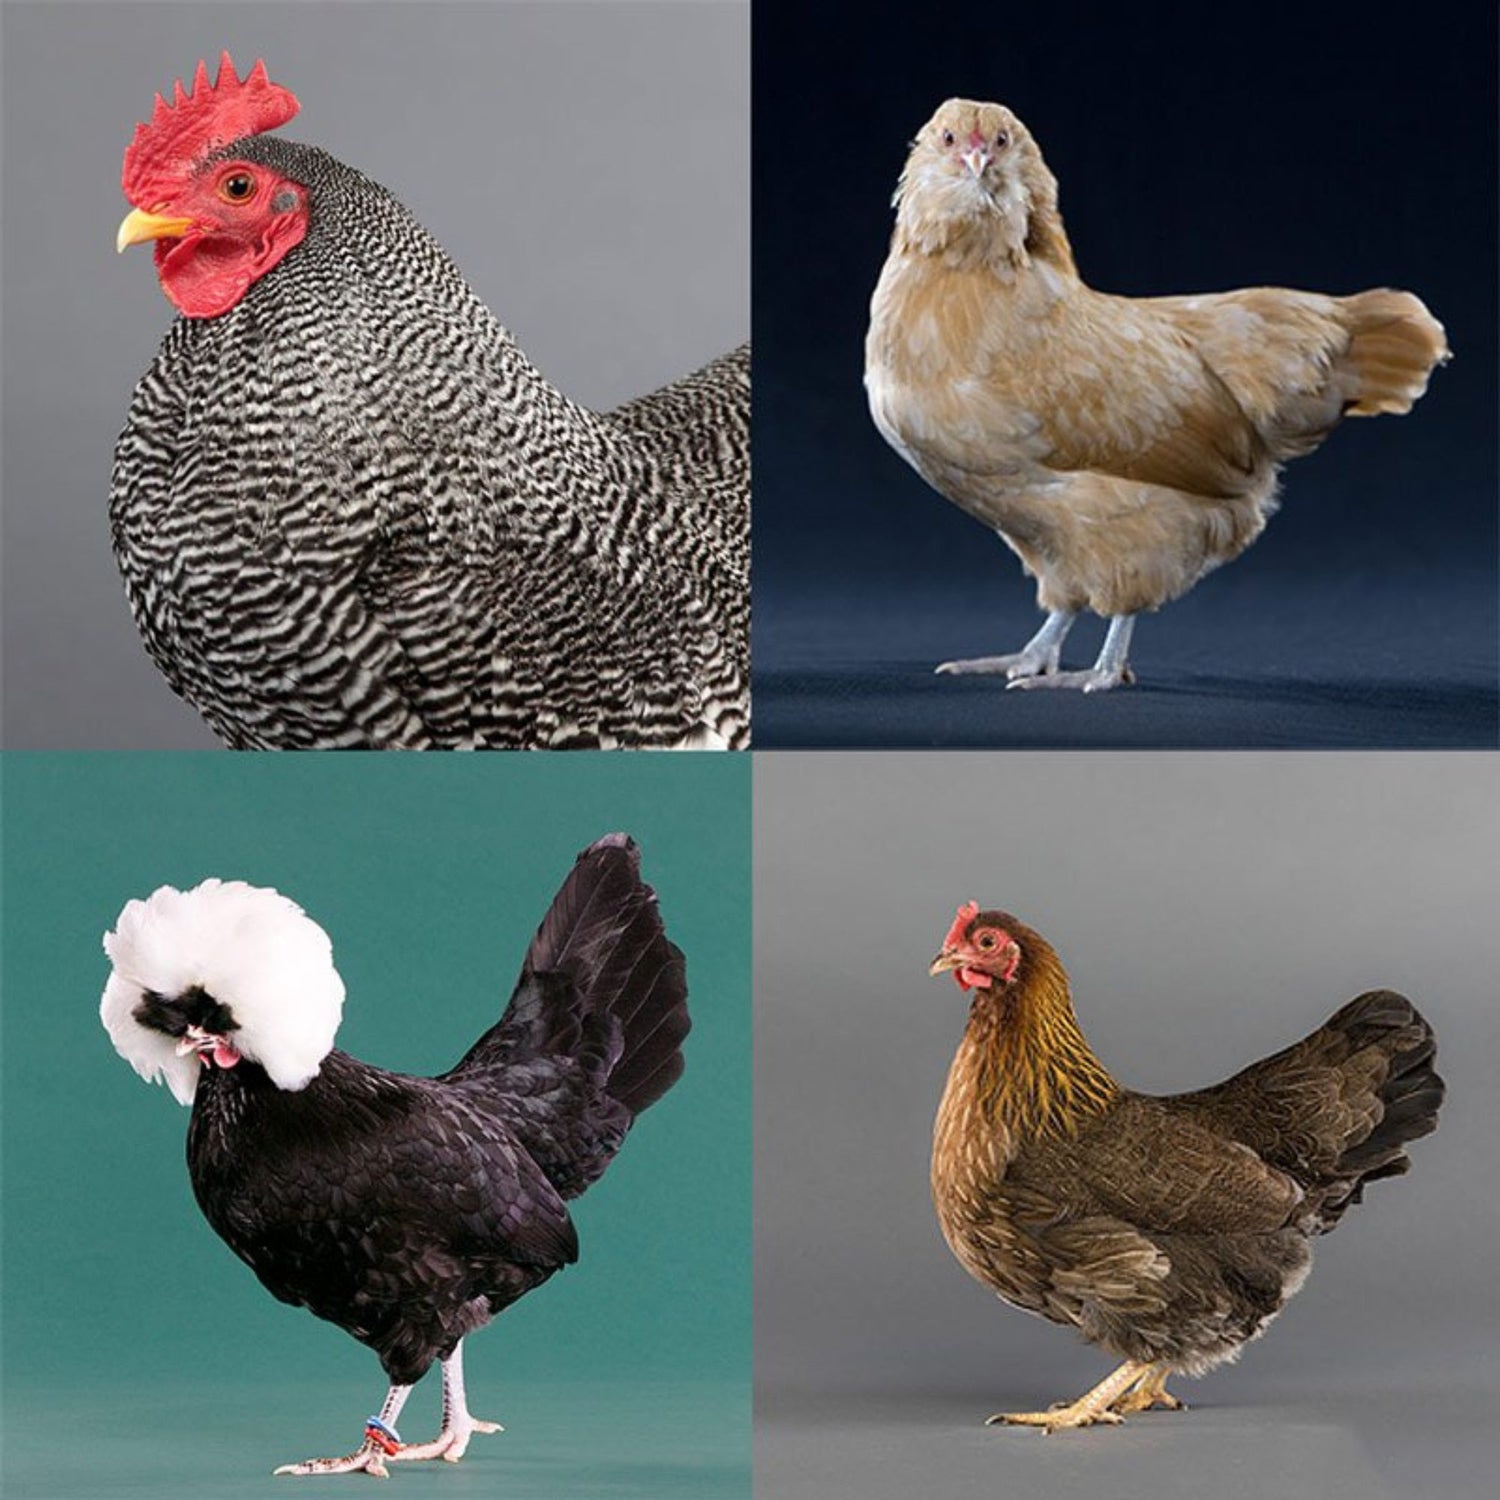 Photos of Bantam chickens